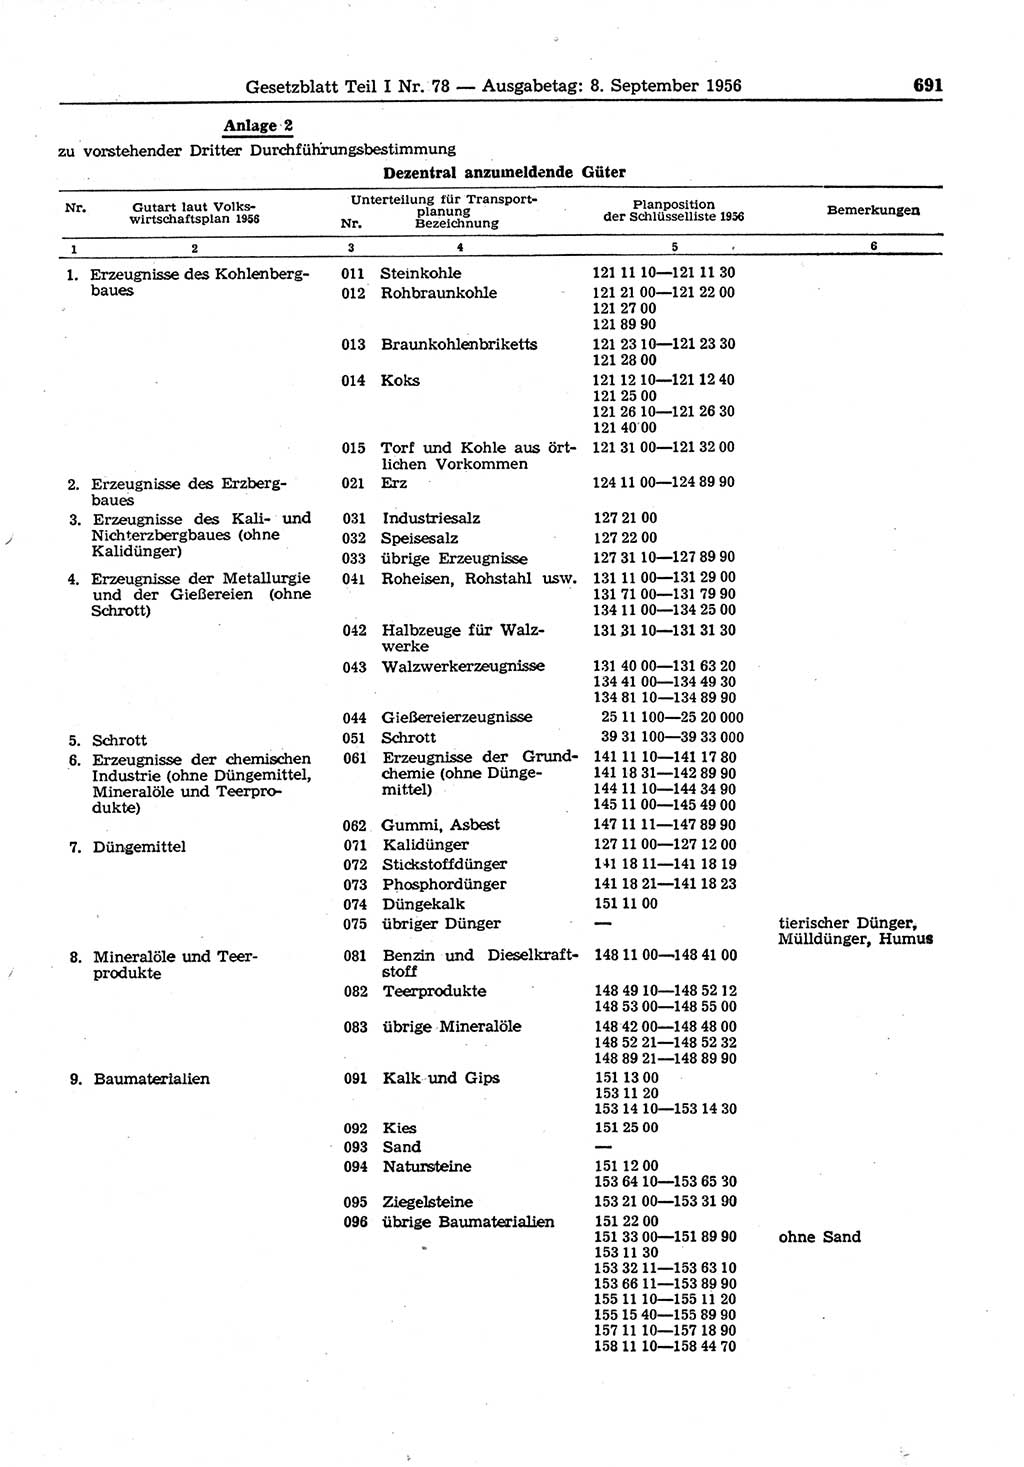 Gesetzblatt (GBl.) der Deutschen Demokratischen Republik (DDR) Teil Ⅰ 1956, Seite 691 (GBl. DDR Ⅰ 1956, S. 691)